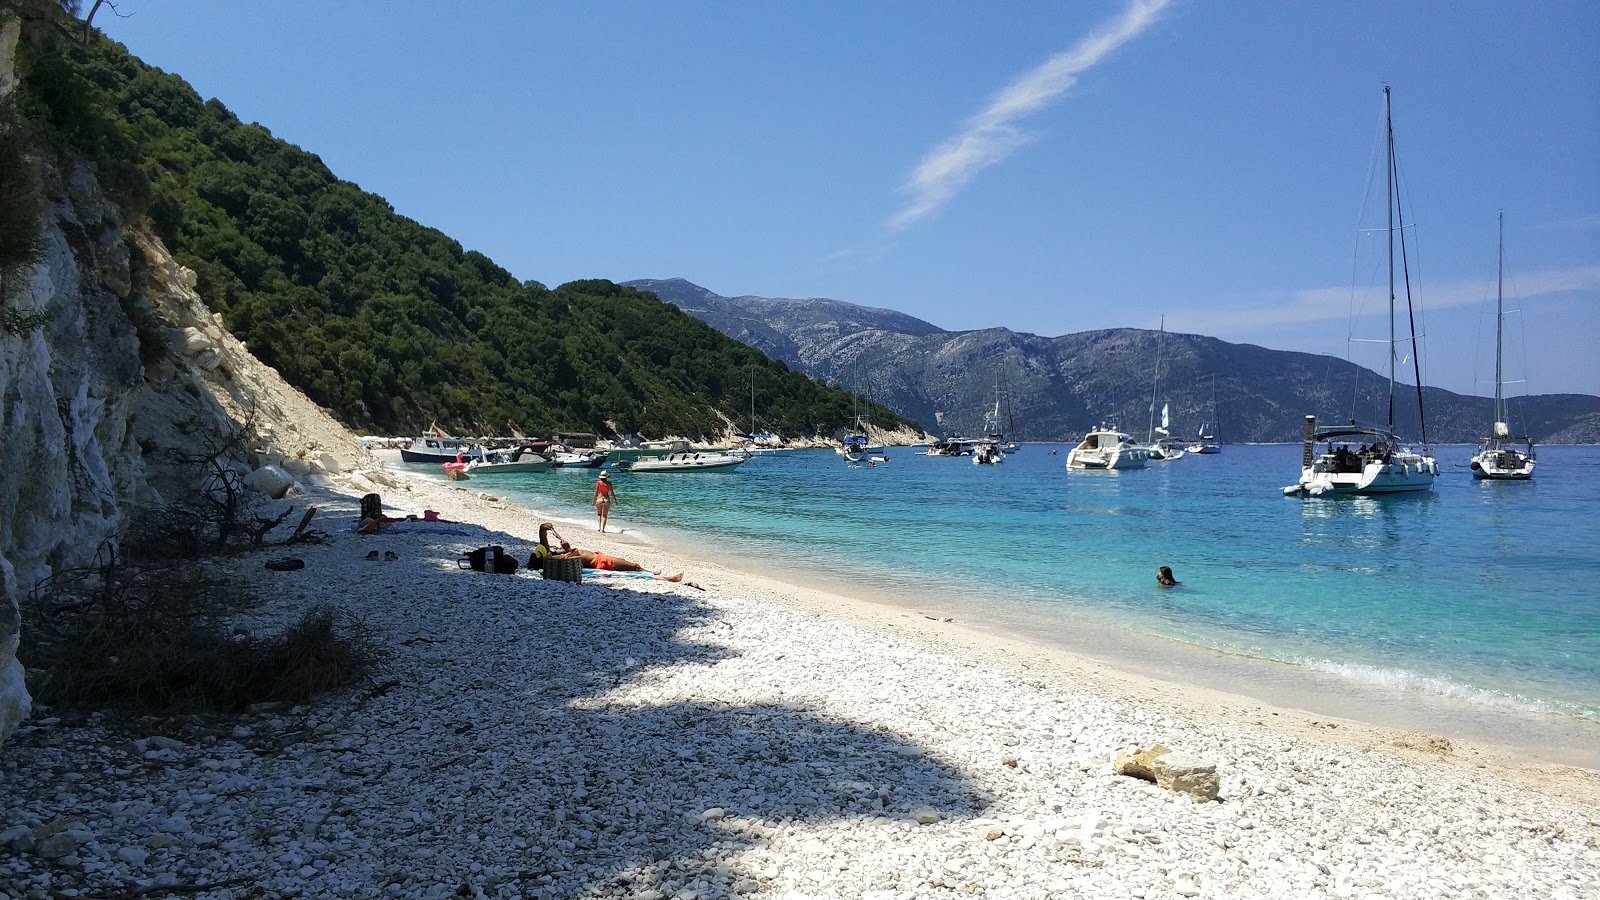 Fotografija Gidaki beach nahaja se v naravnem okolju